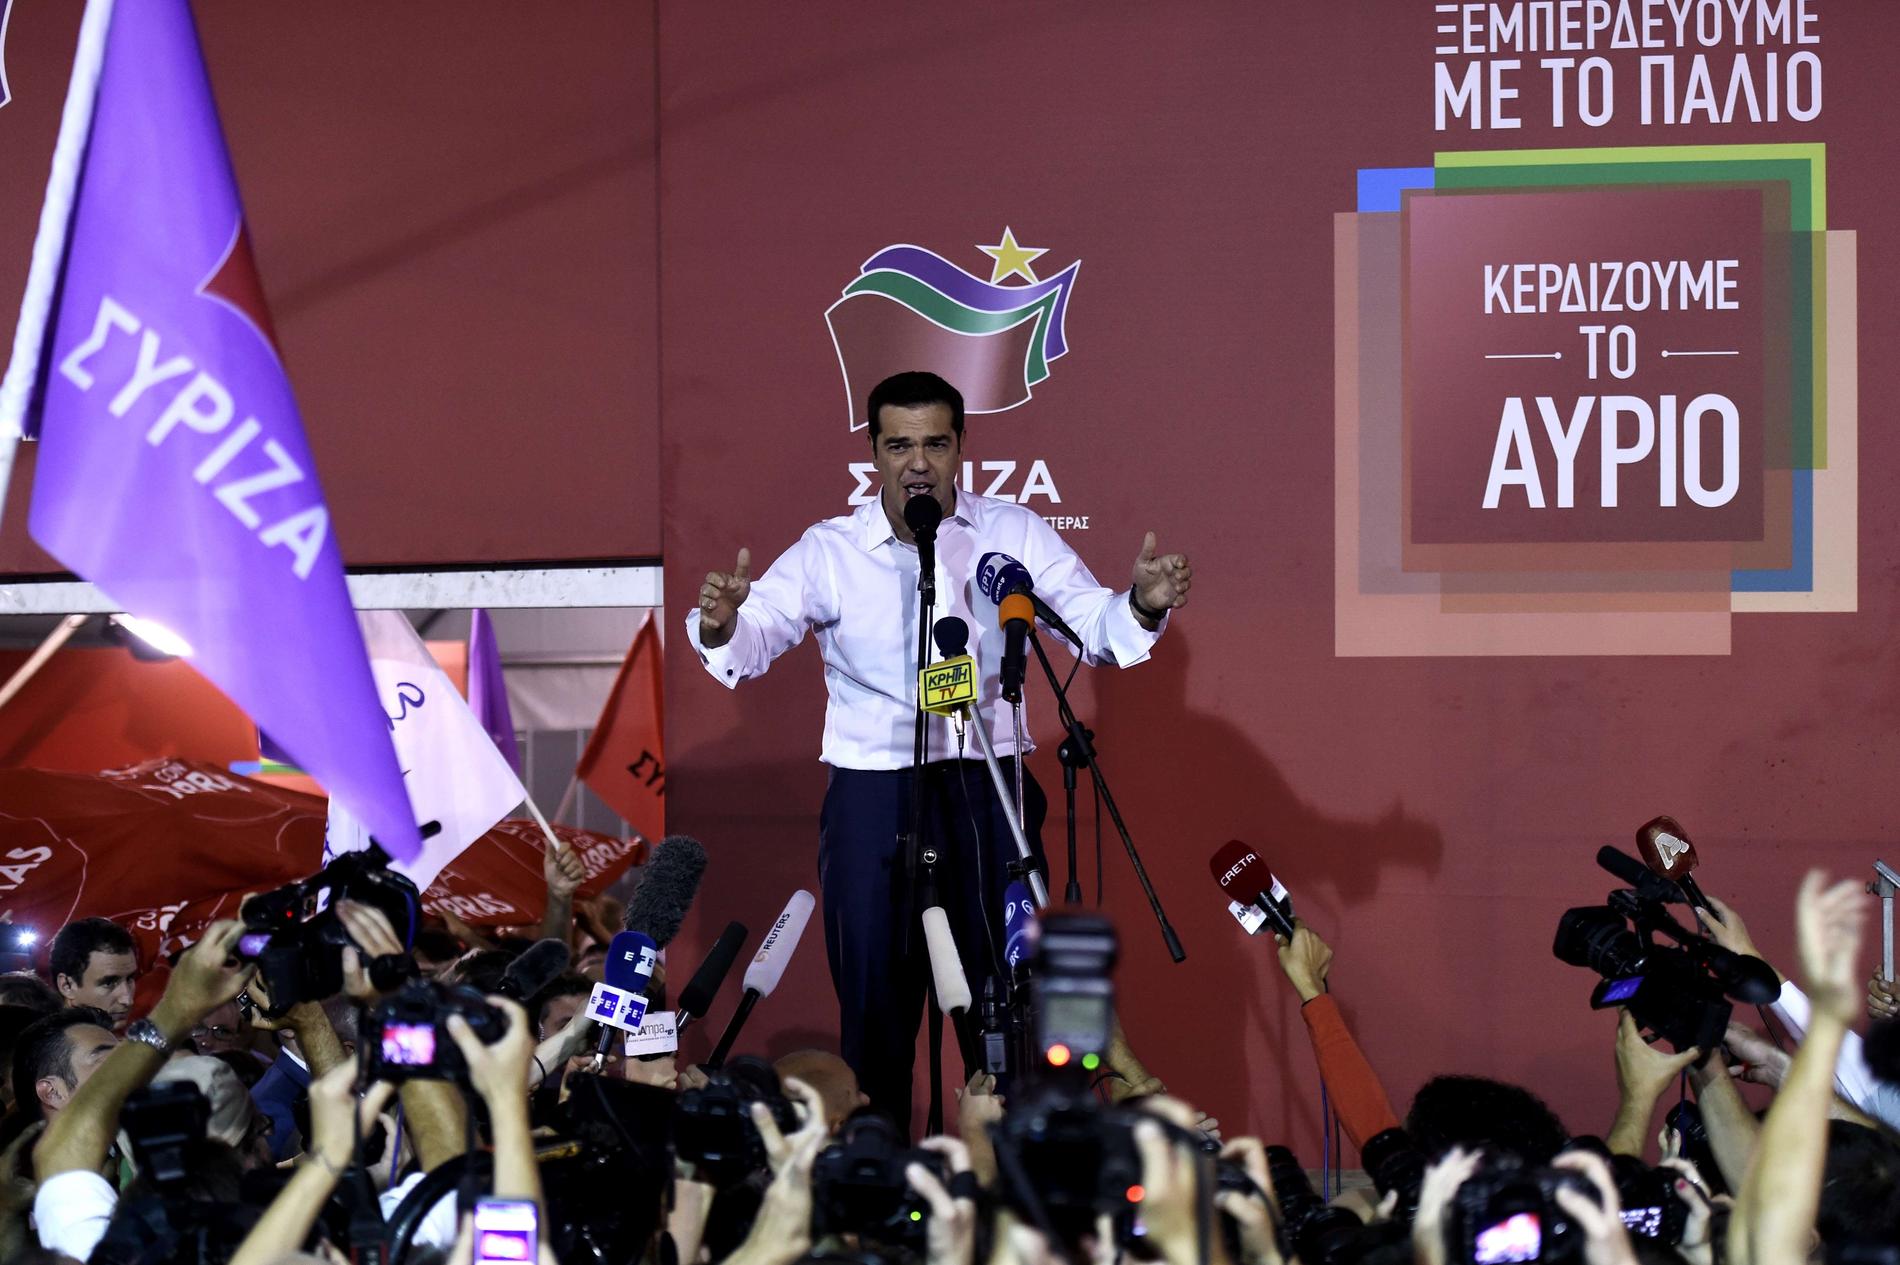 Vänsterpartiet Syriza, med Alexis Tsipras i spetsen tog hem en oväntat stor seger i det grekiska nyvalet.